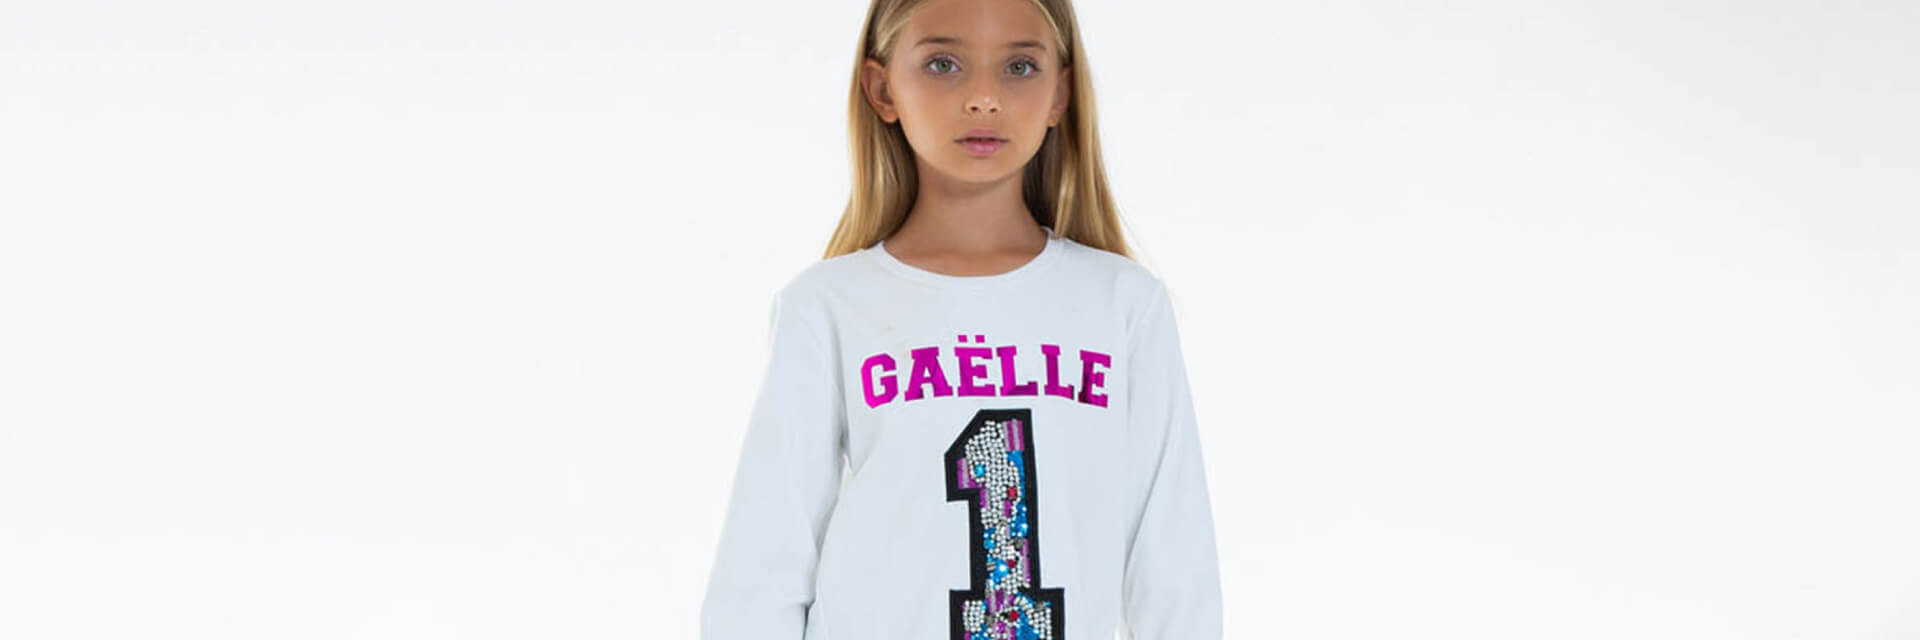 Abbigliamento da bambini Gaelle Paris prezzi Outlet